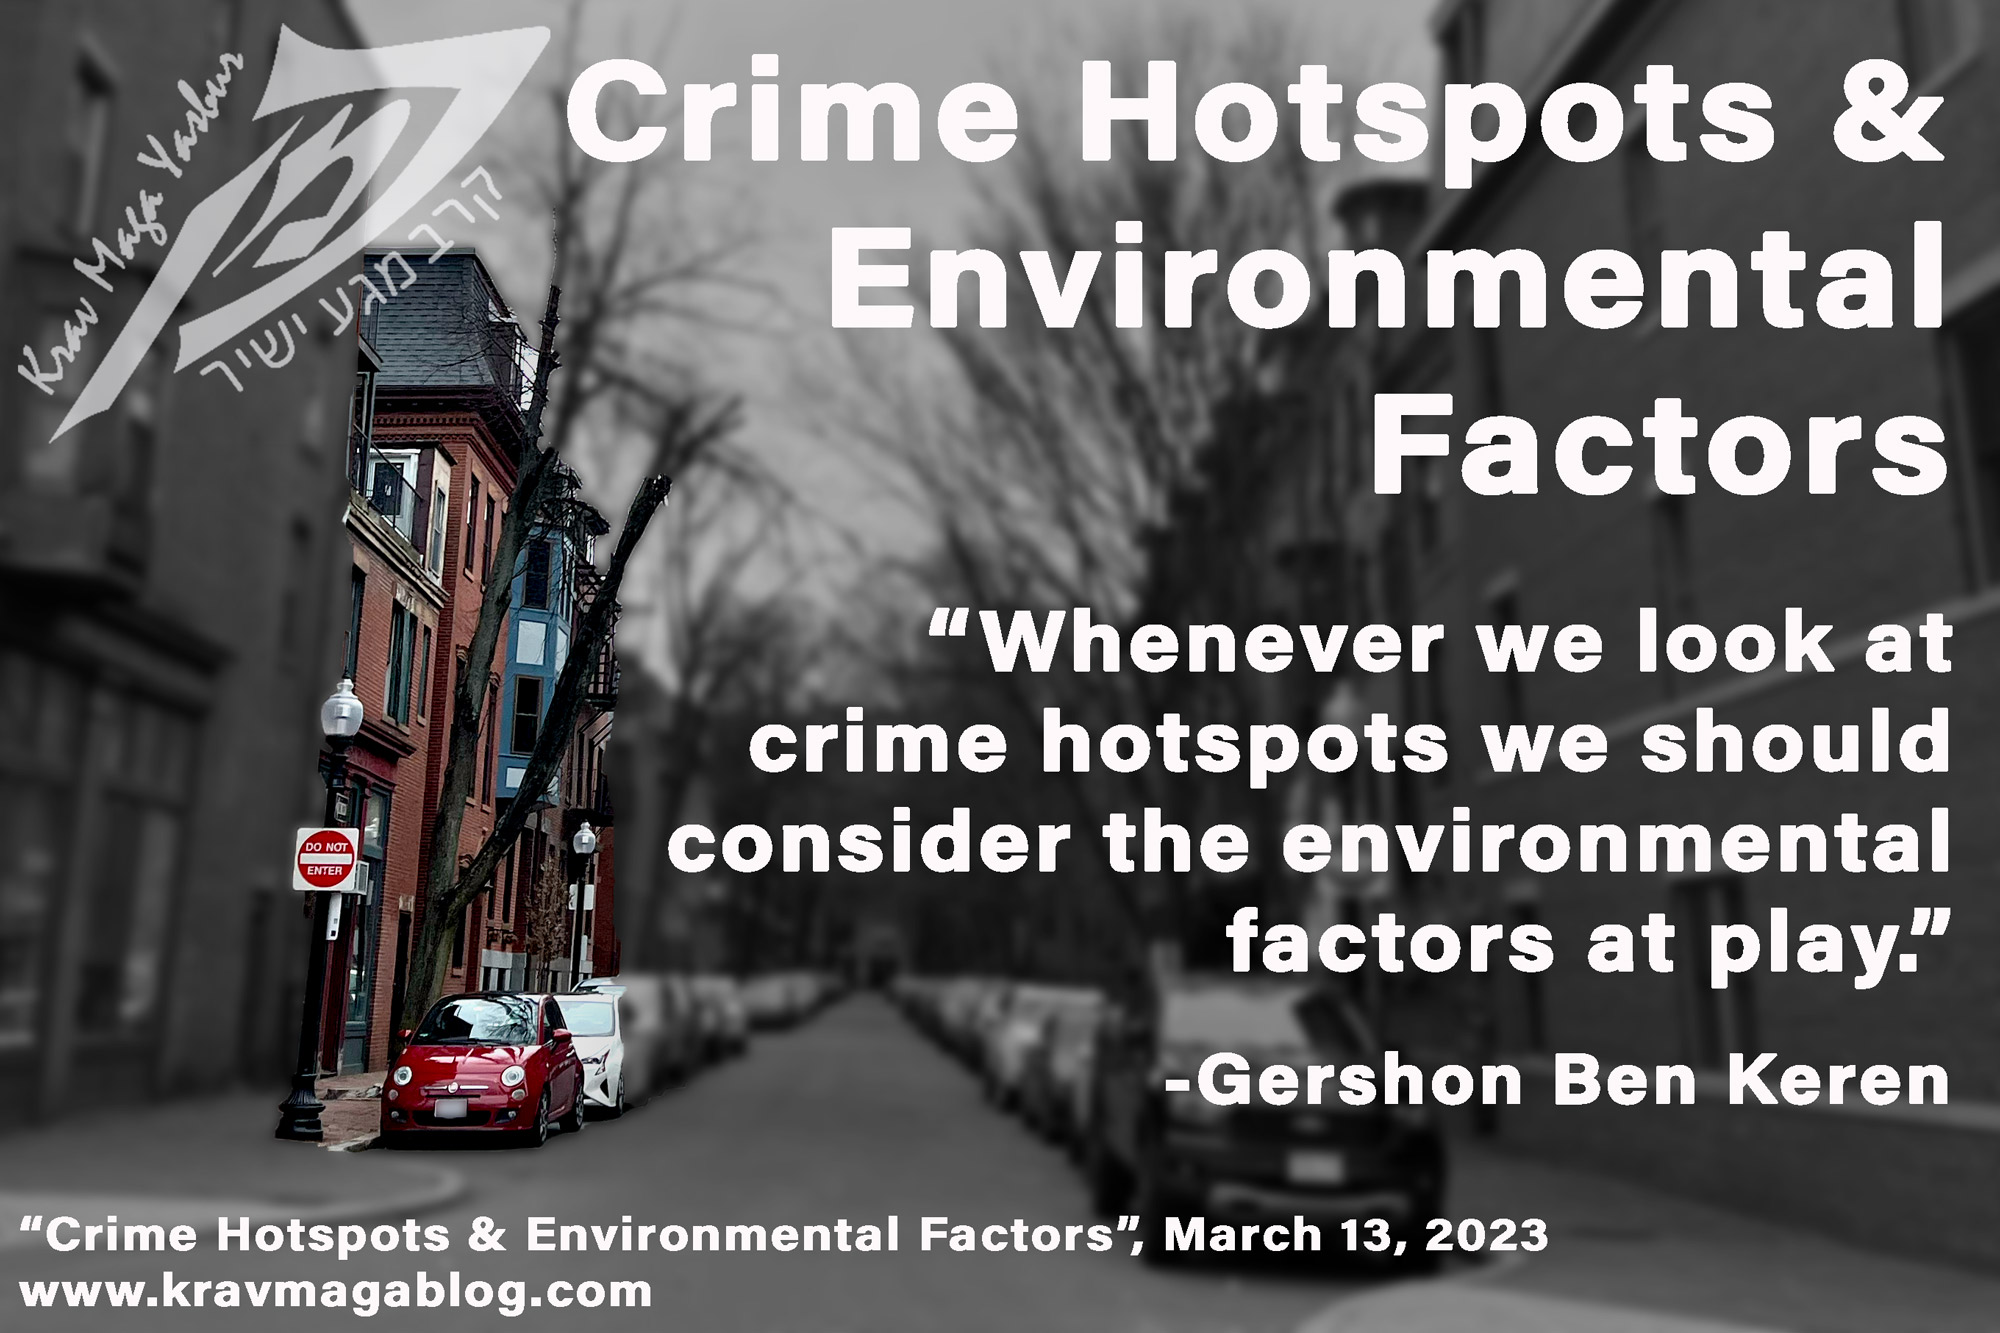 Blog About Crime Hotspots & Environmental Factors